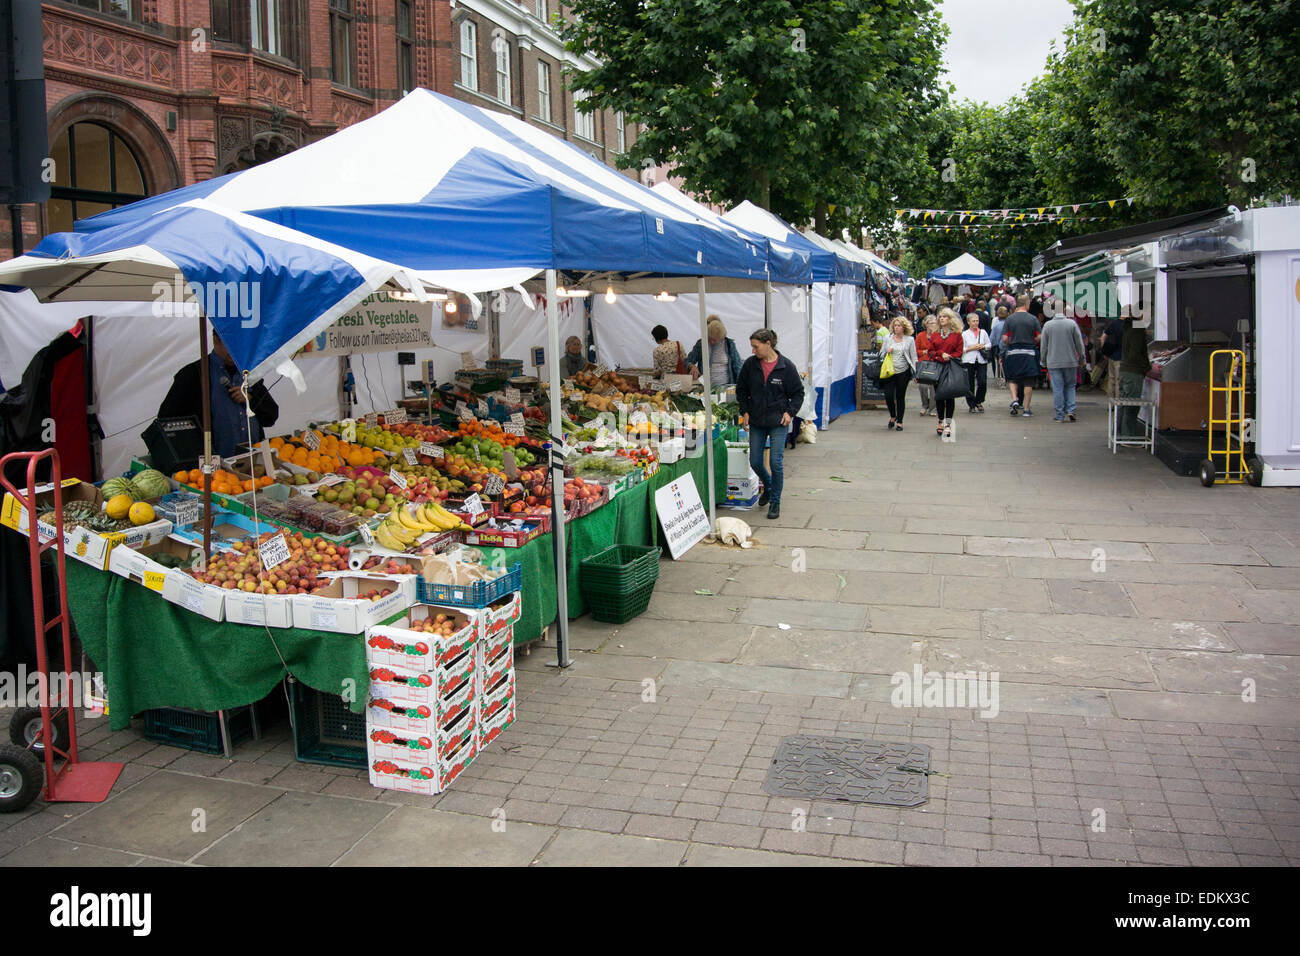 Obst-Stall auf einem Stadt-Marktstand, York, UK Stockfoto